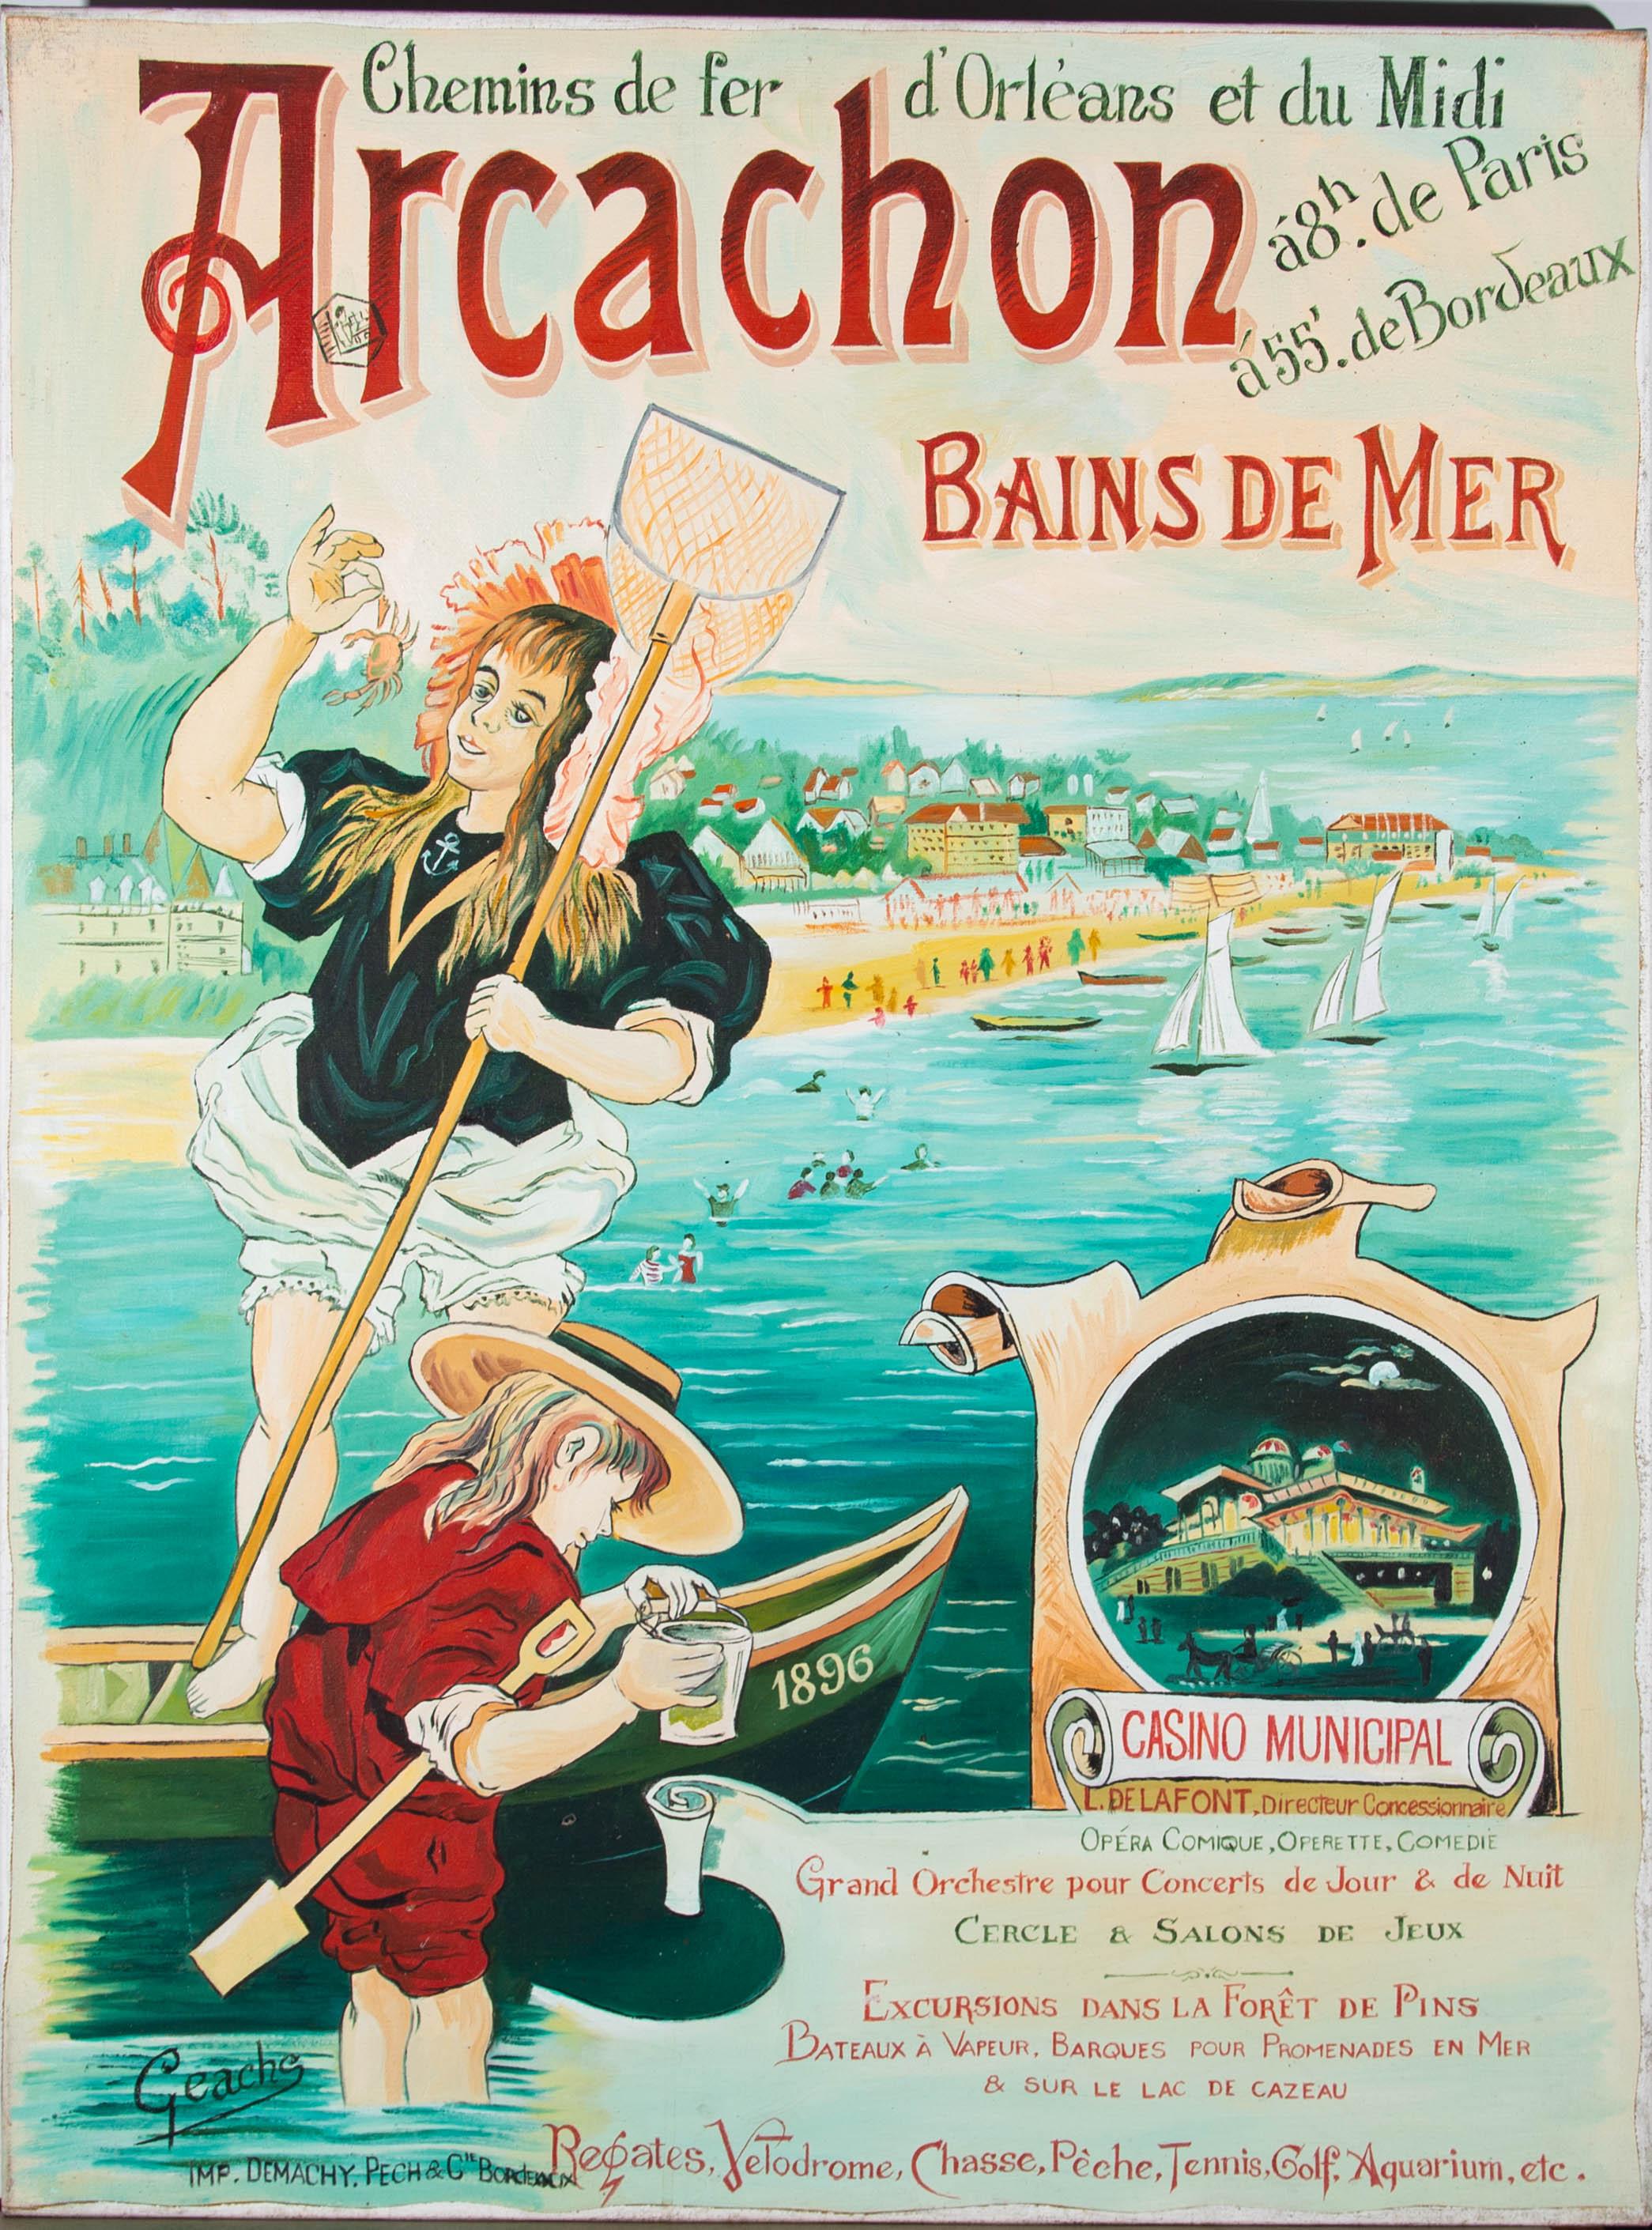 After Géache - Contemporary Acrylic, Arcachon Bains de Mer For Sale 1